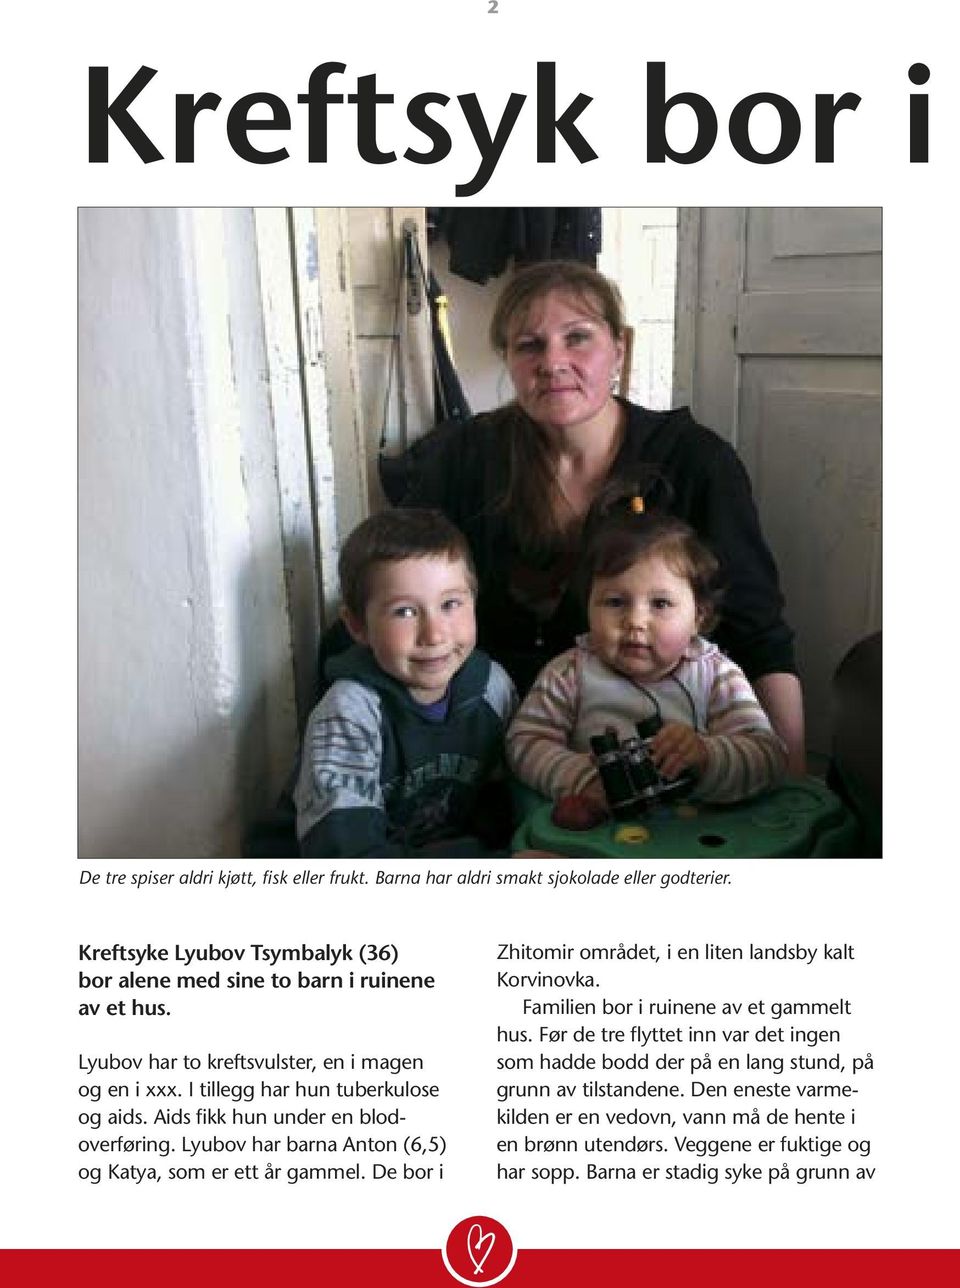 Aids fikk hun under en blodoverføring. Lyubov har barna Anton (6,5) og Katya, som er ett år gammel. De bor i Zhitomir området, i en liten landsby kalt Korvinovka.